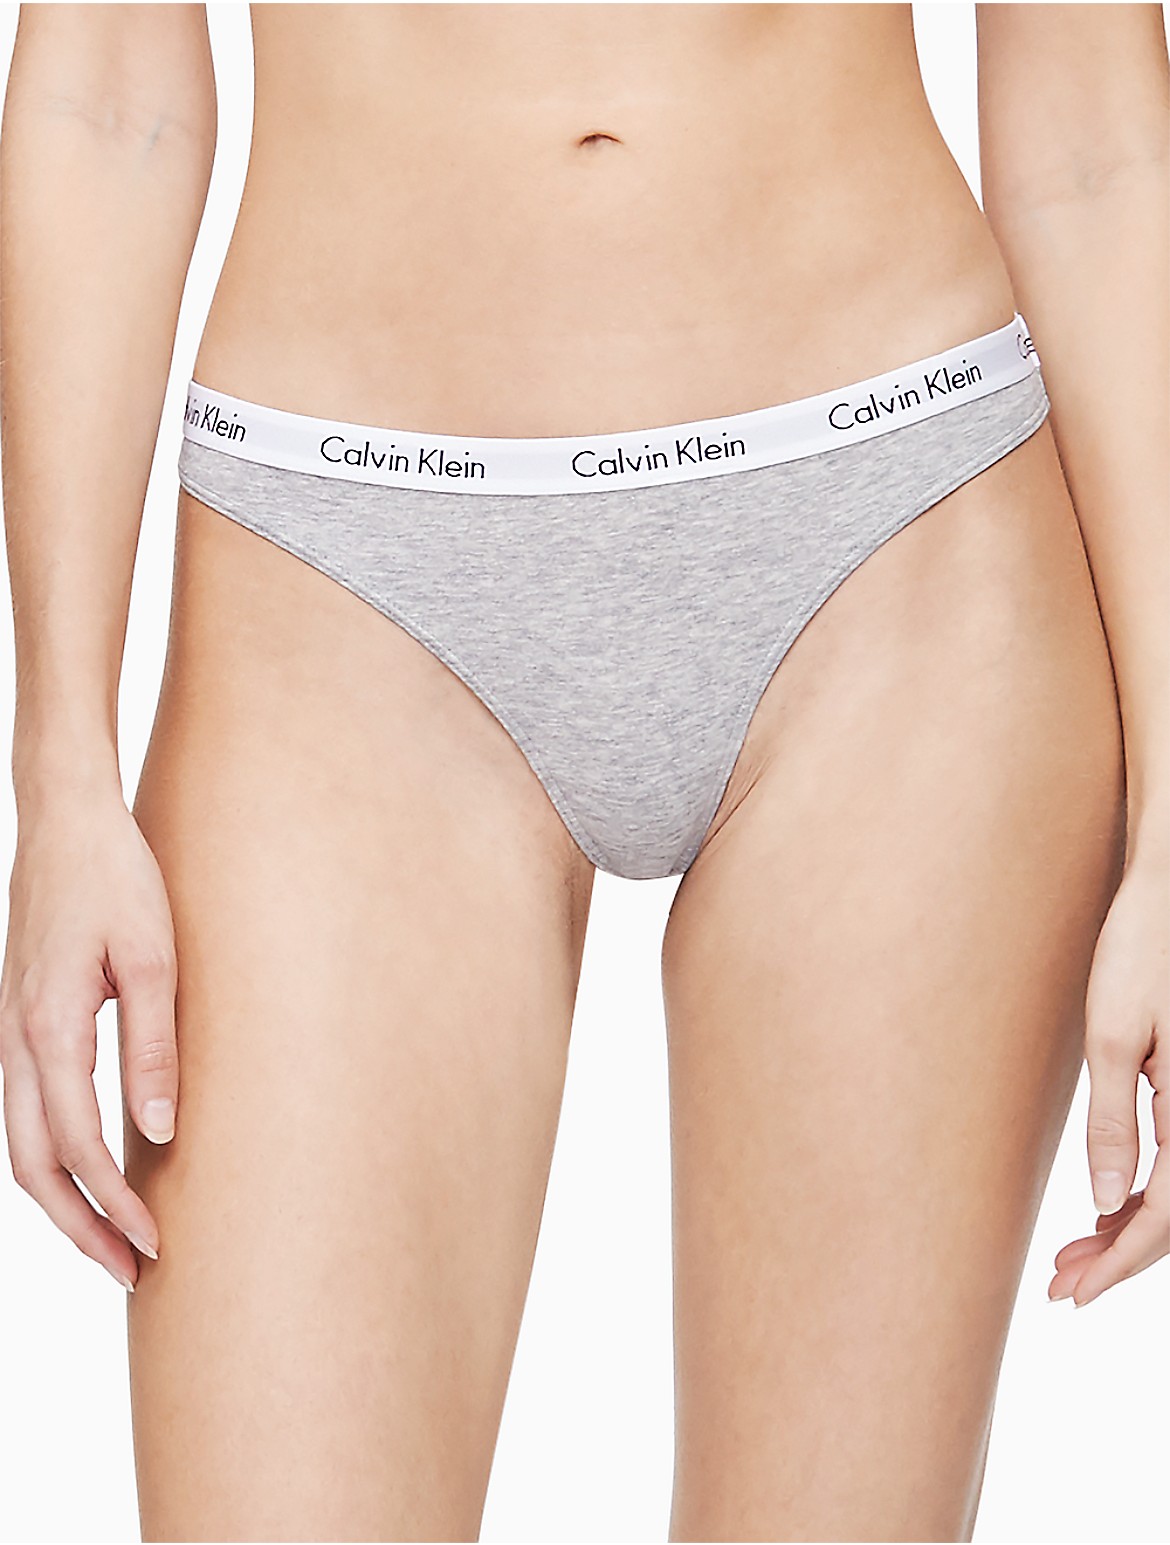 Calvin Klein Women's Carousel Logo Cotton Thong - Grey - XL